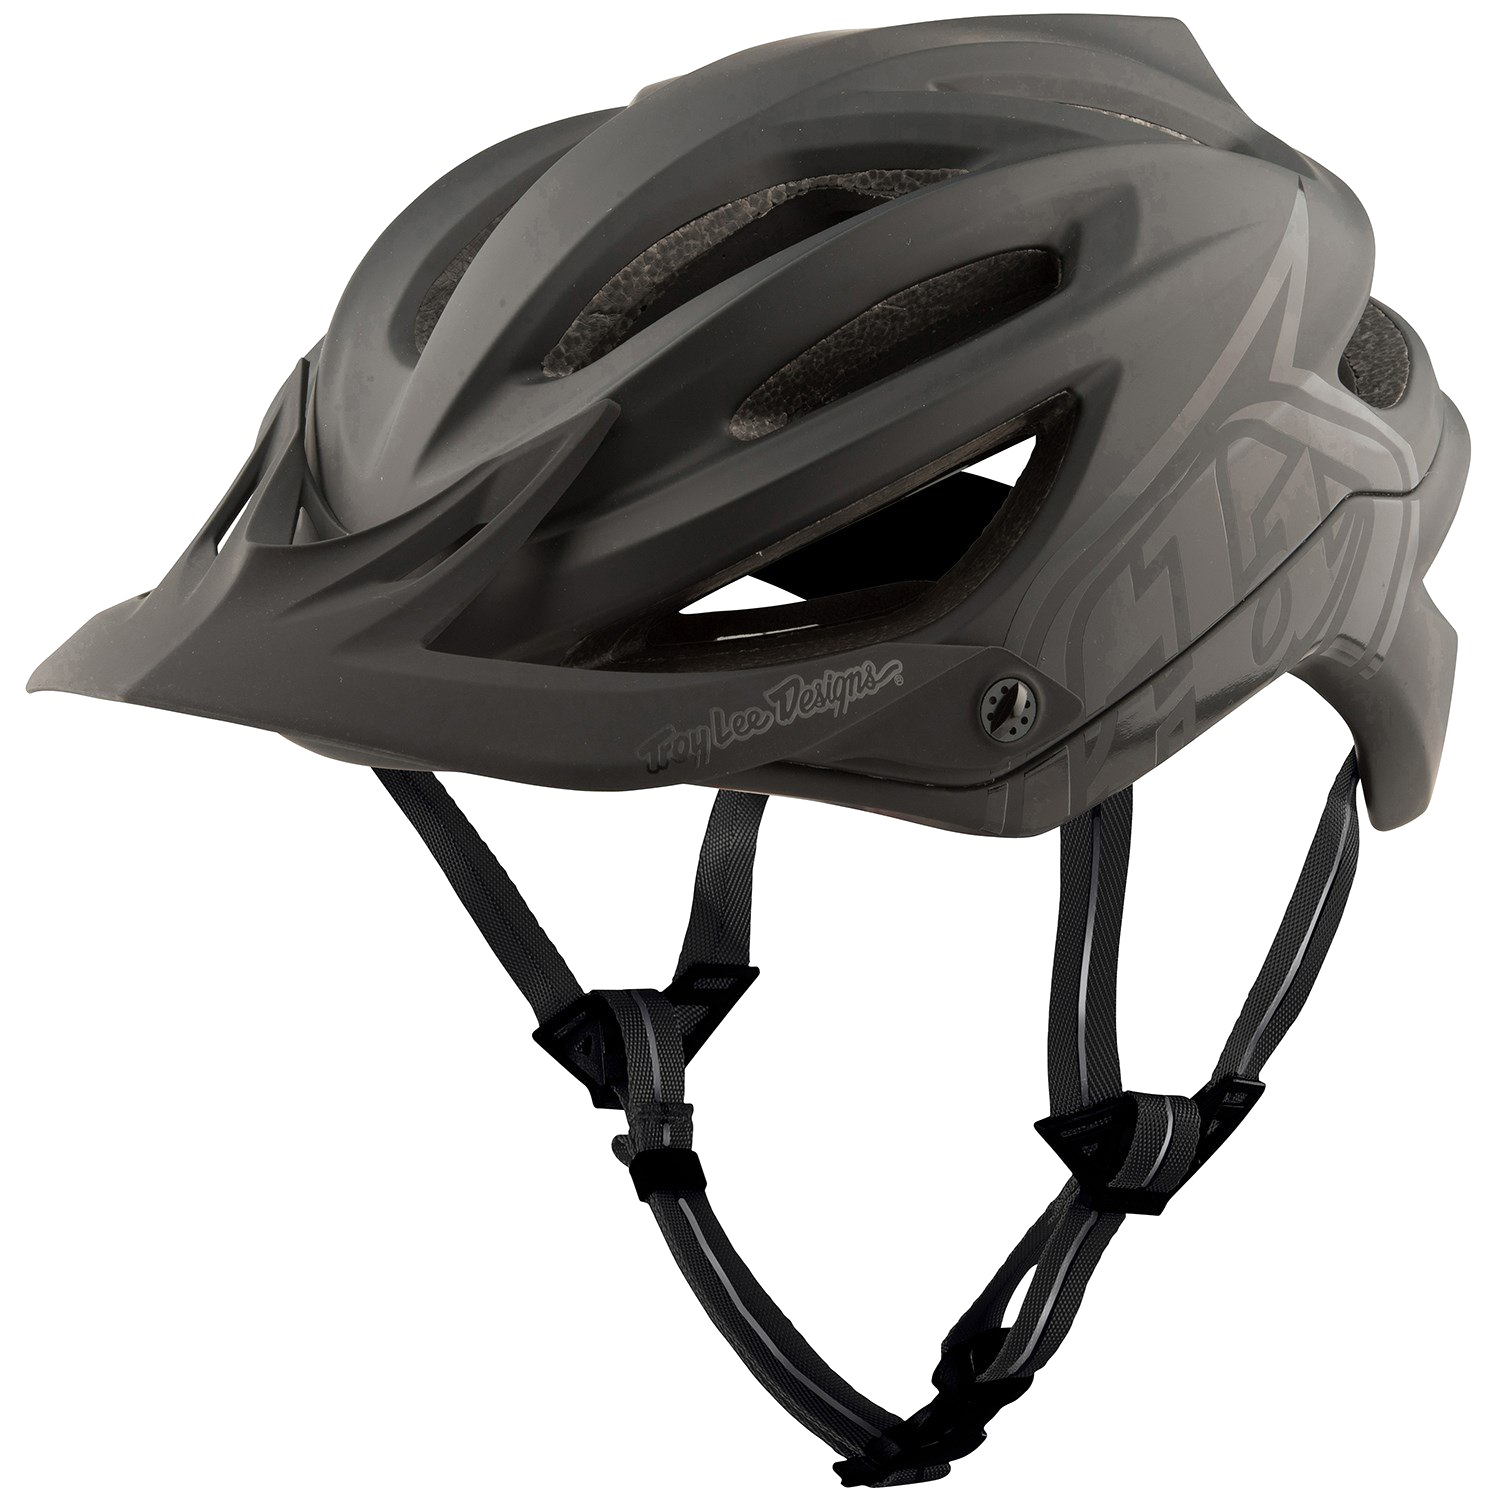 Bike Helmet PNG Image Transparent